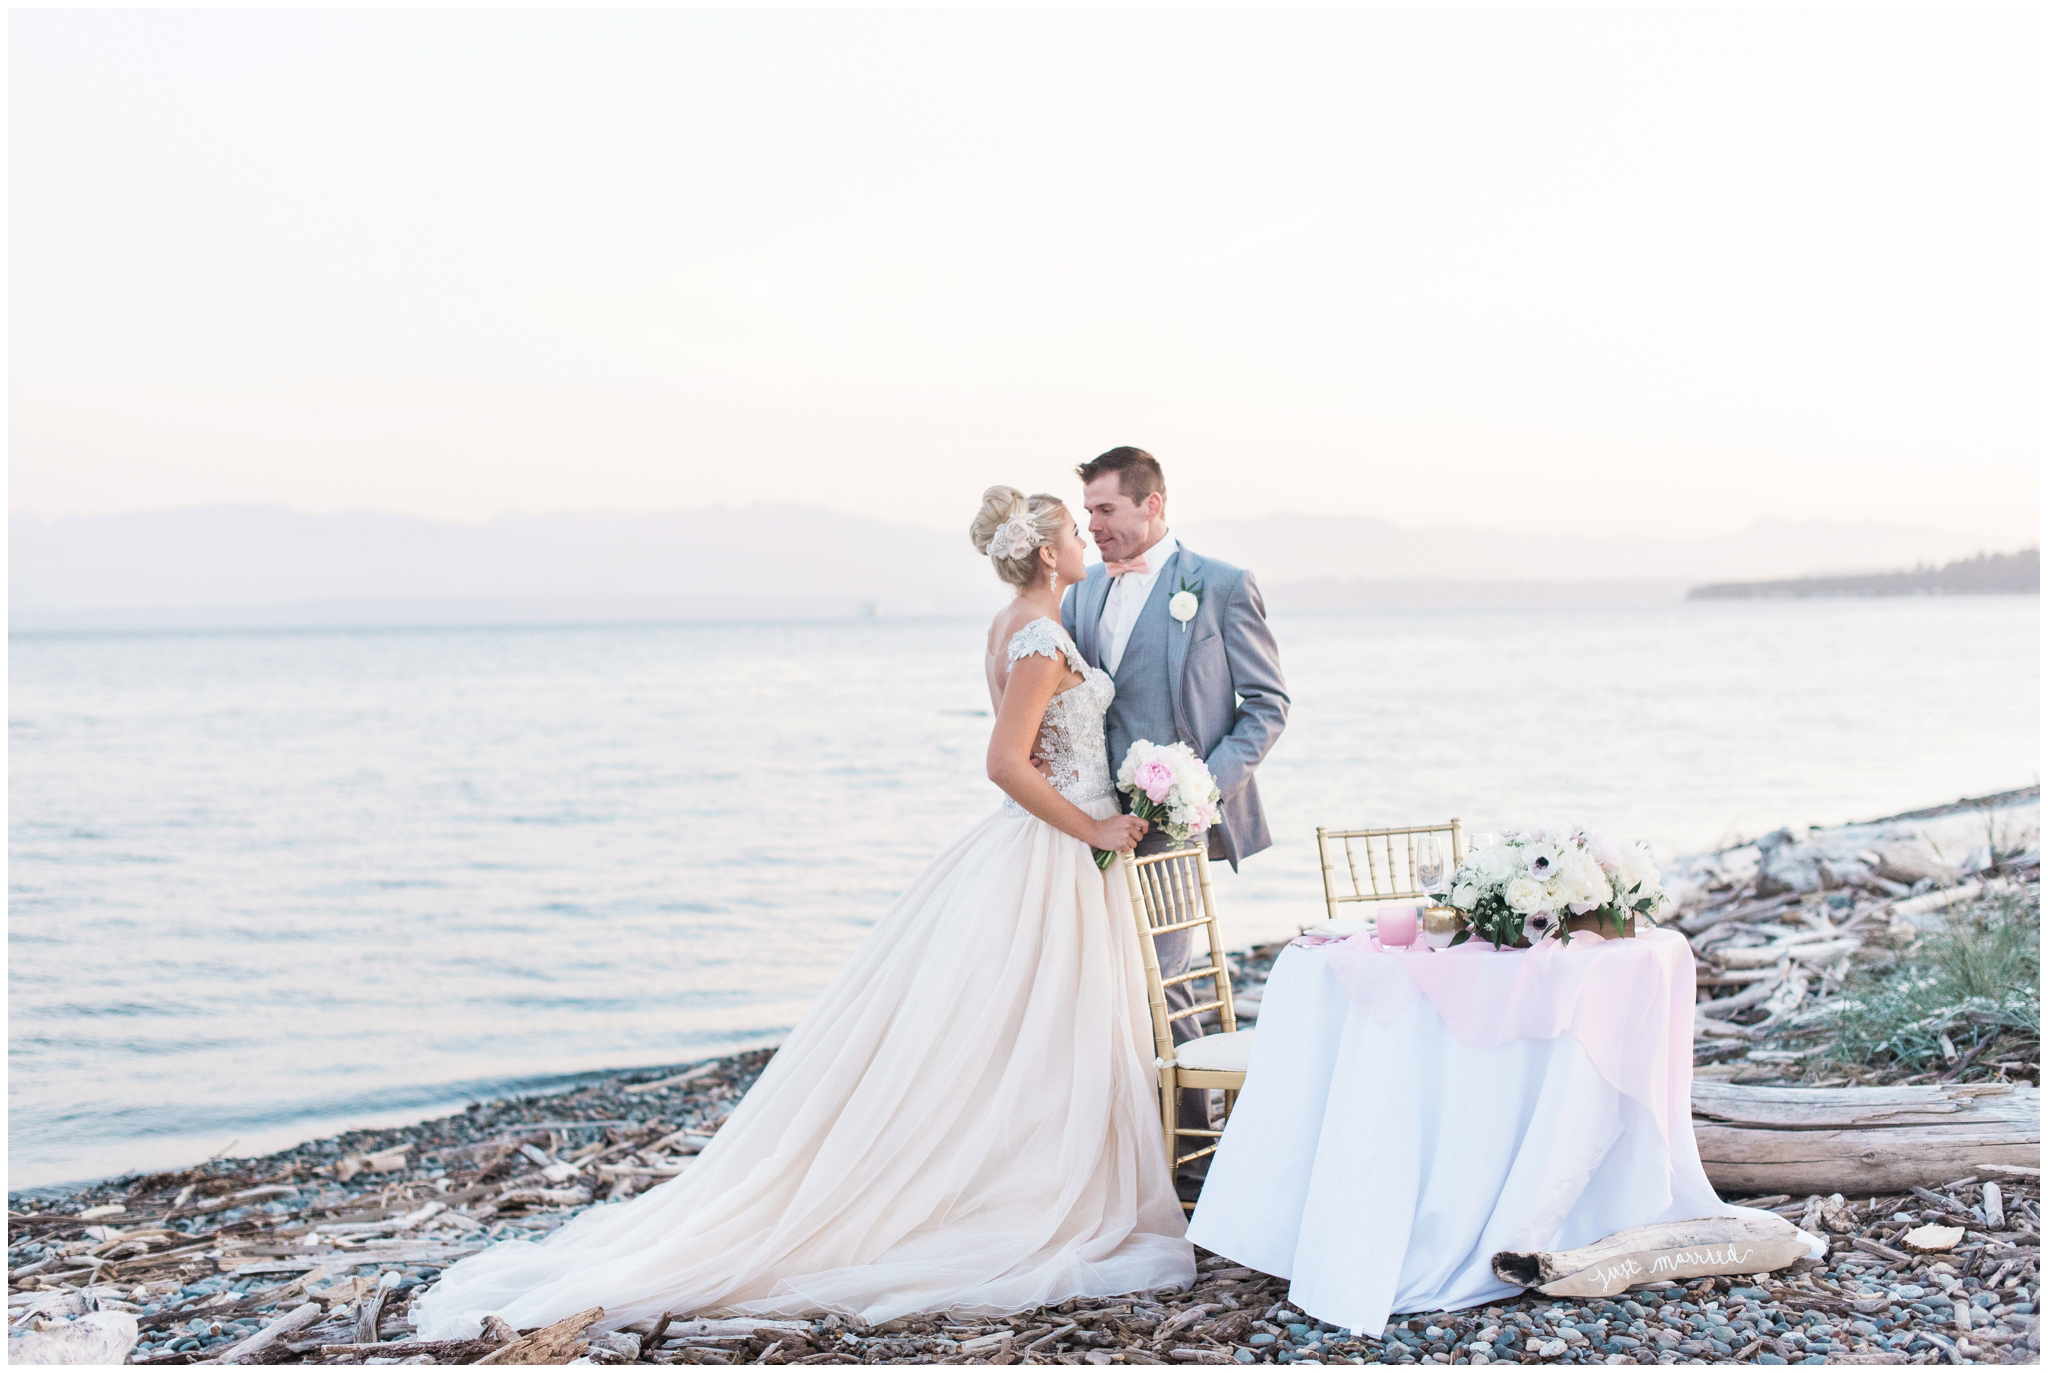 Seattle Wedding Photographer | snohomish wedding photographer |